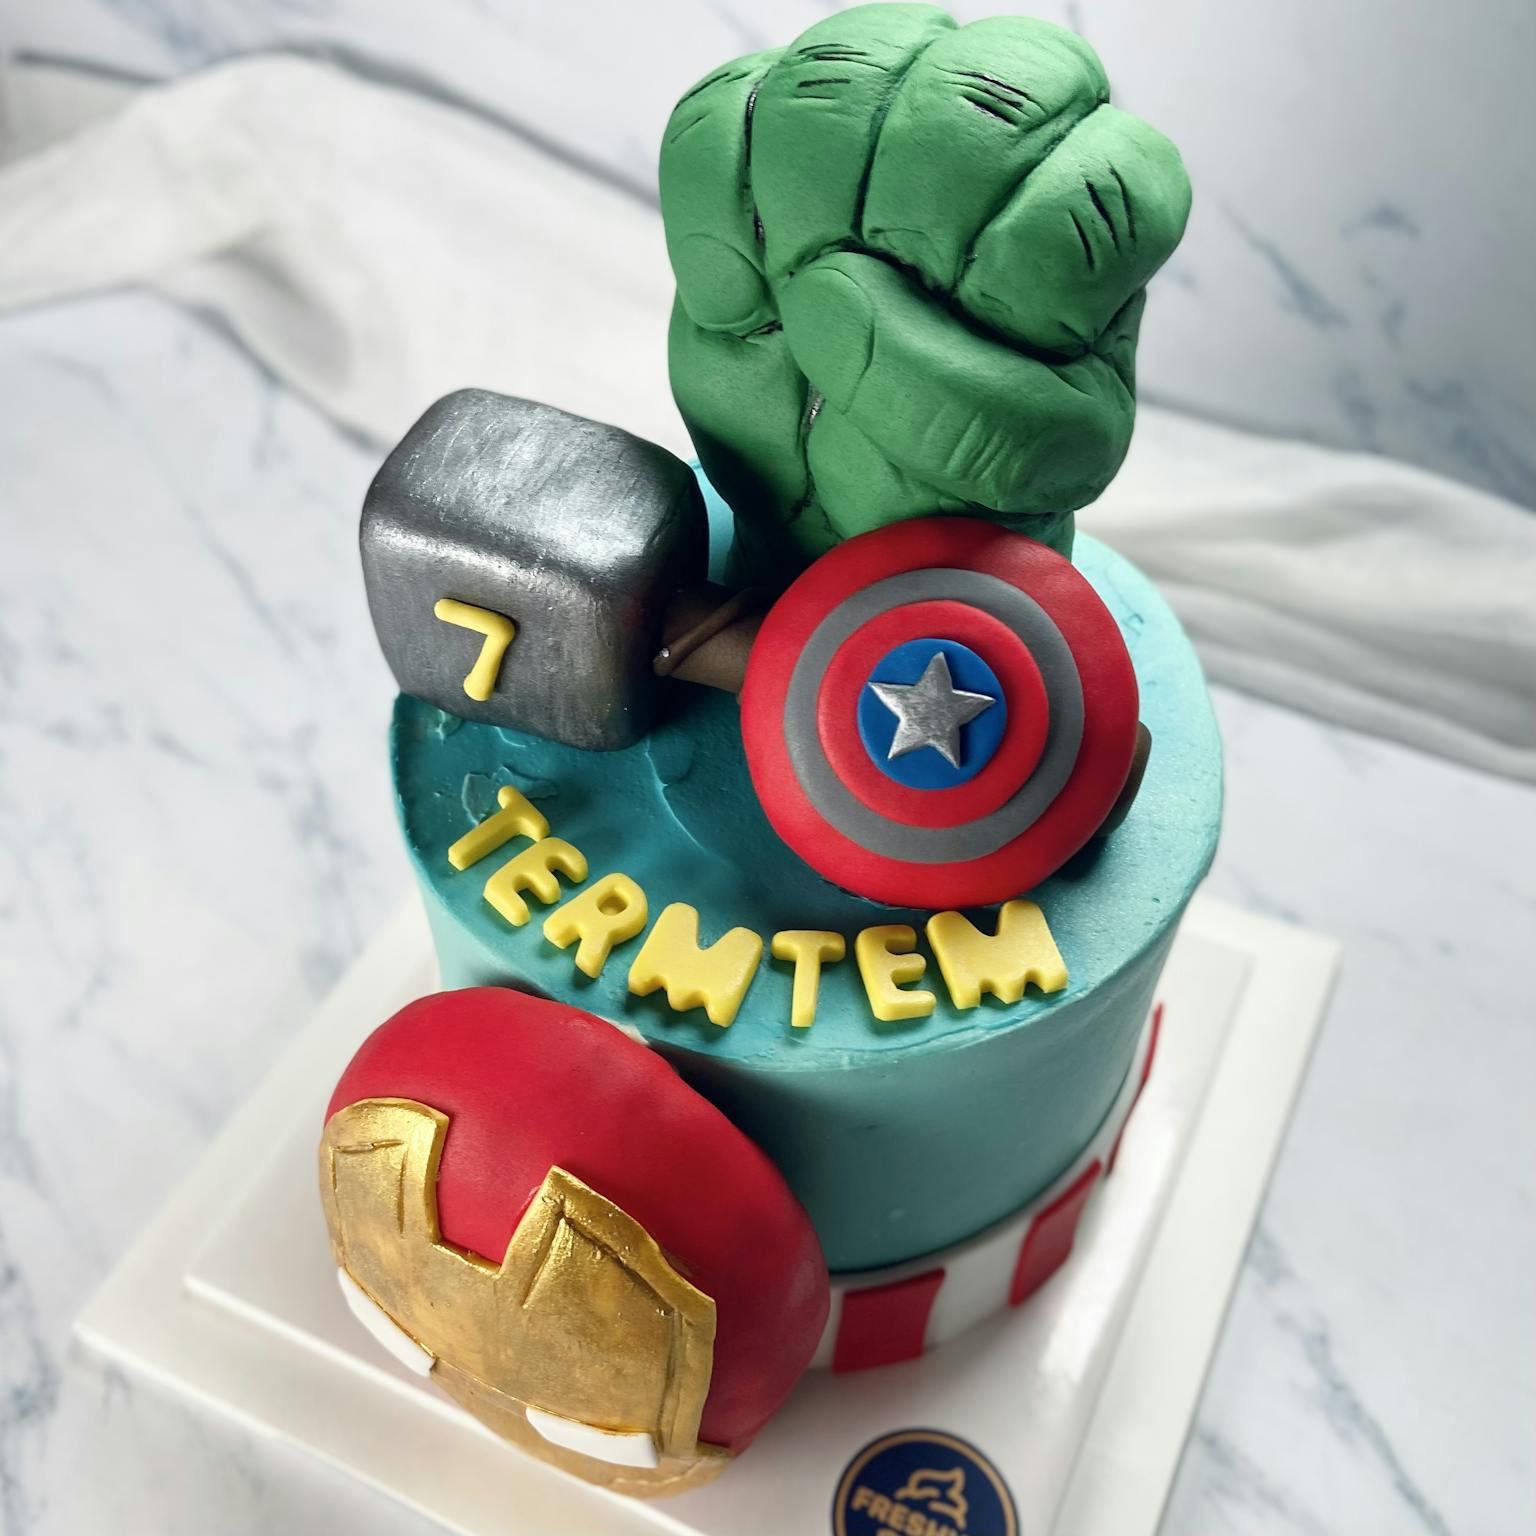 100% edible fondant sculpted Marvel Avengers cake